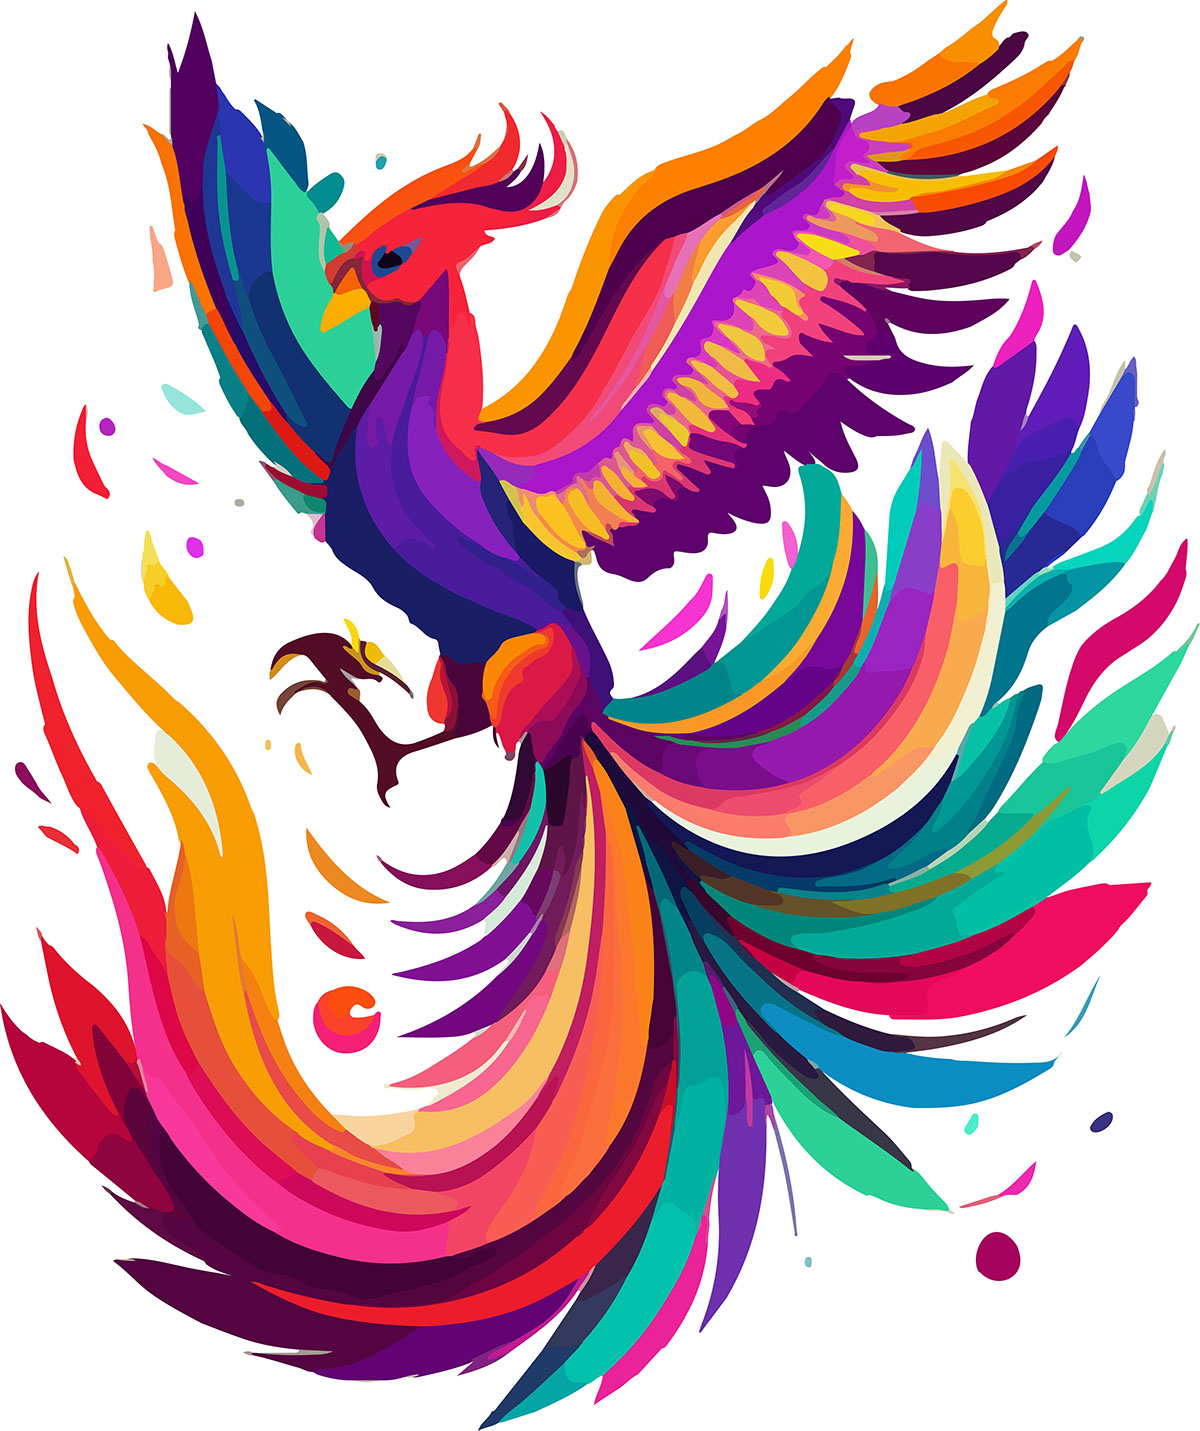 A Stylized Male Phoenix in 2D Cartoon rendition image